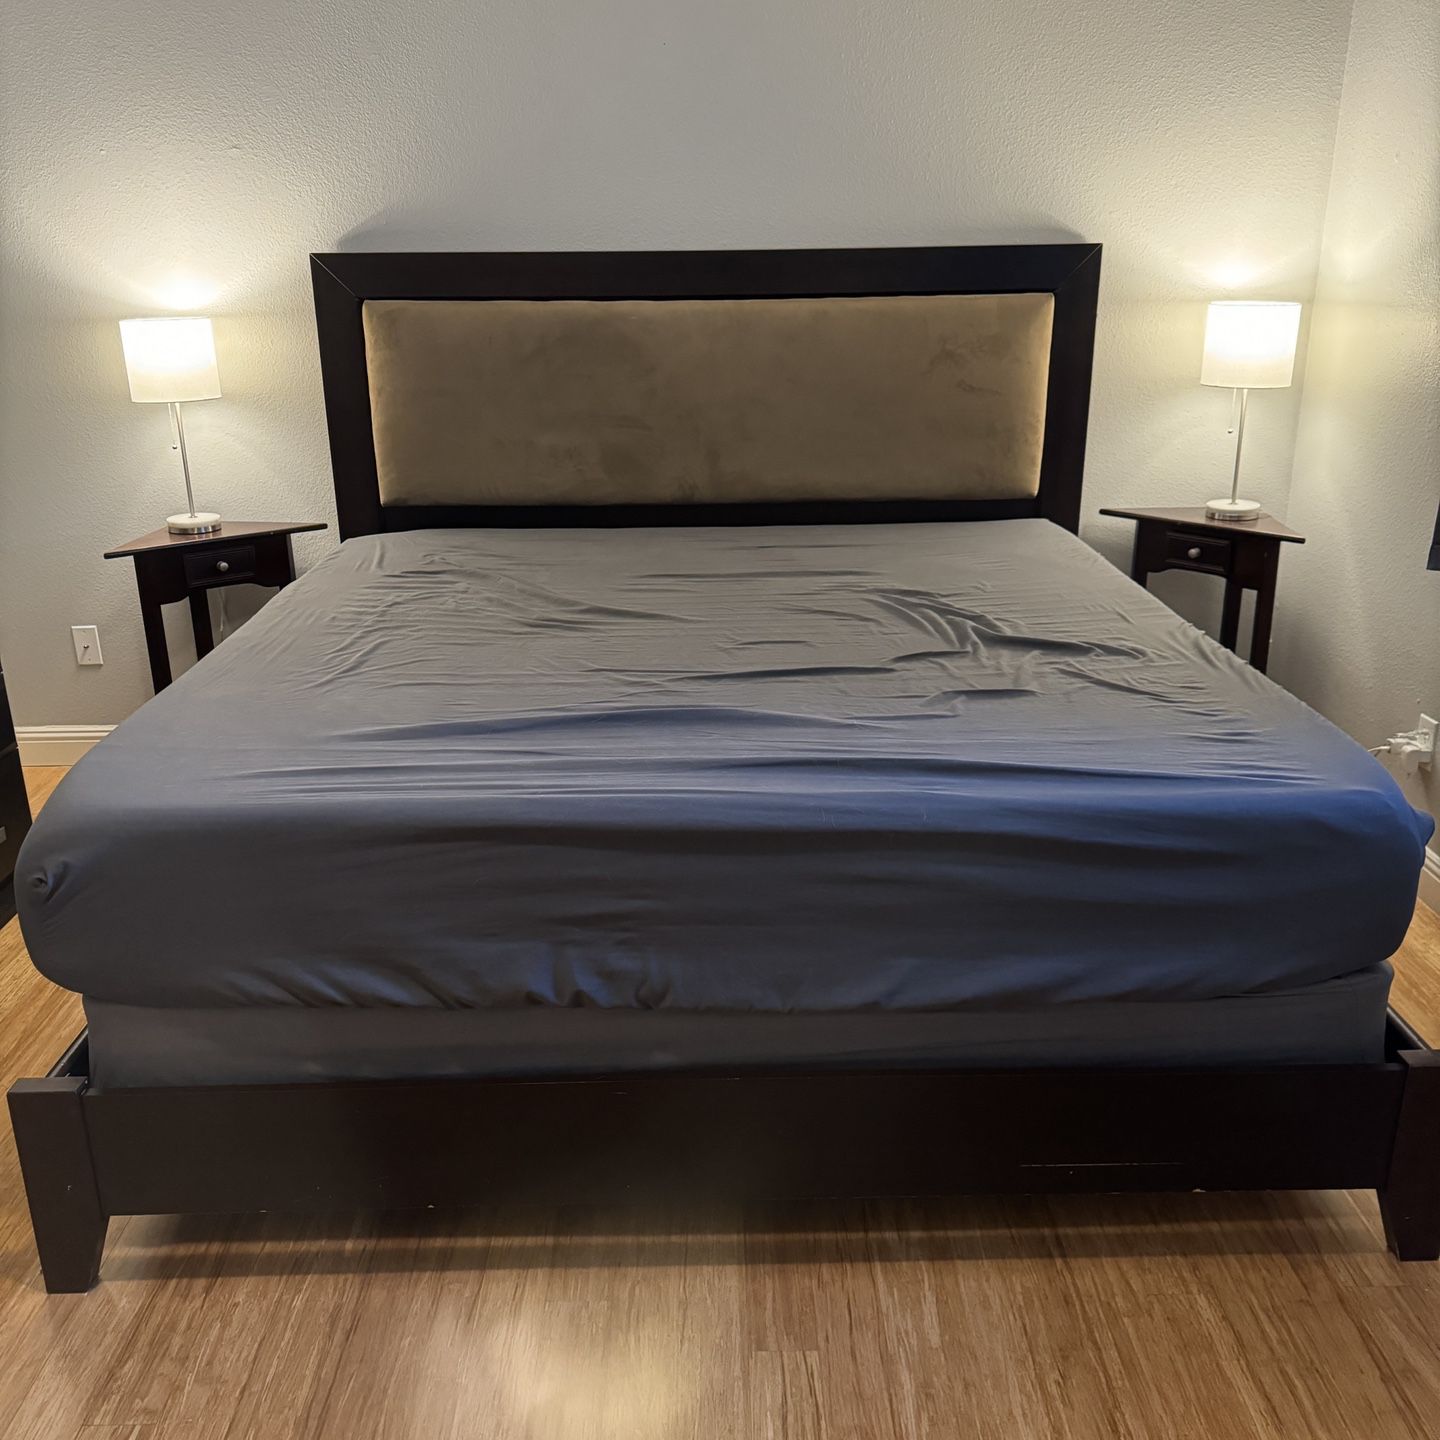 King Bedroom Suite: Frame/Dresser/Night Stands